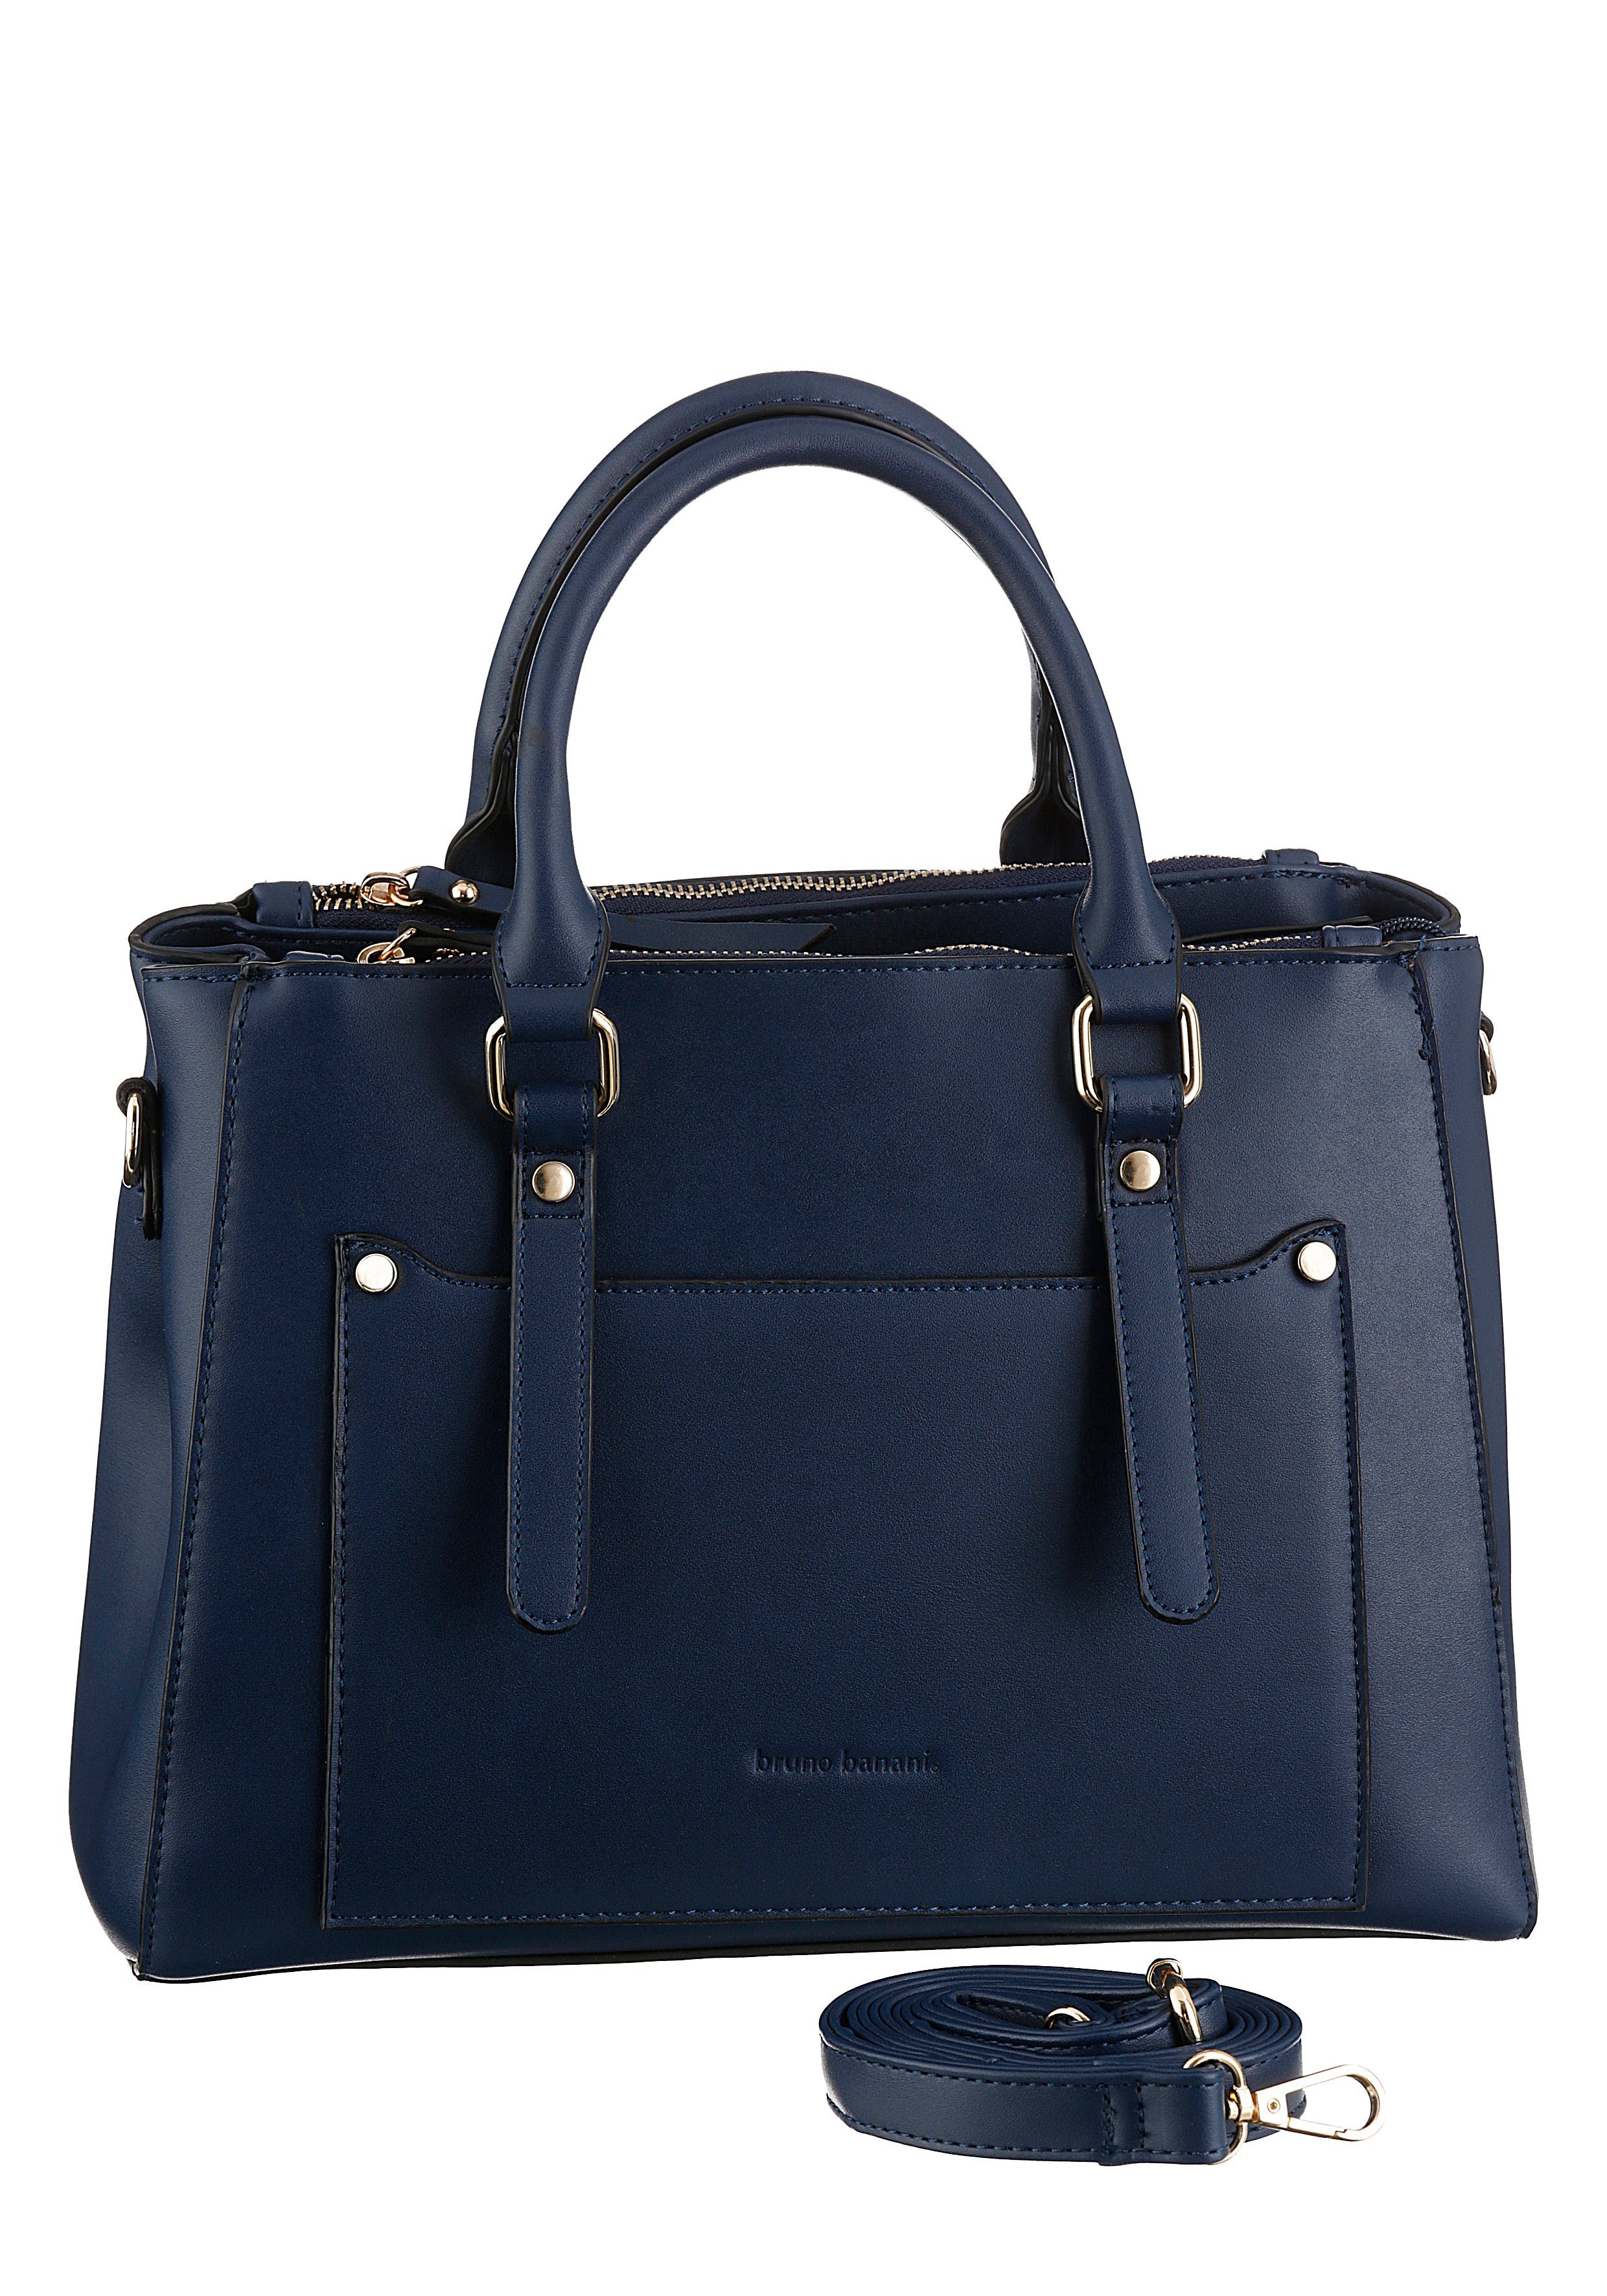 Blaue Damen Handtaschen online kaufen | OTTO